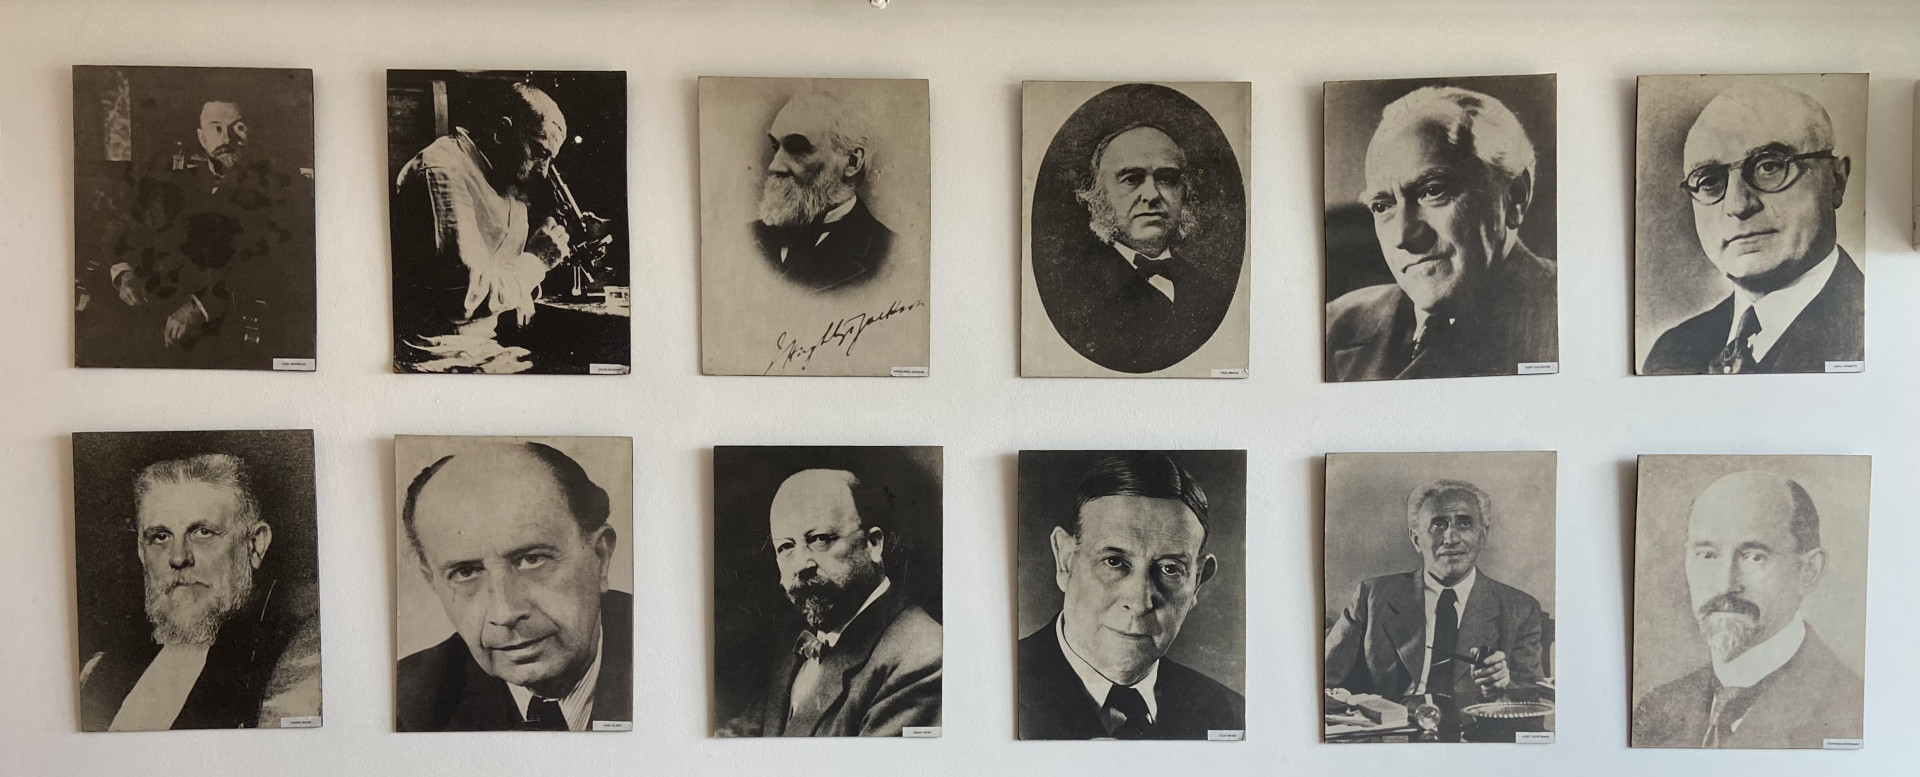 série de fotos a preto e branco de homens importante no laboratório